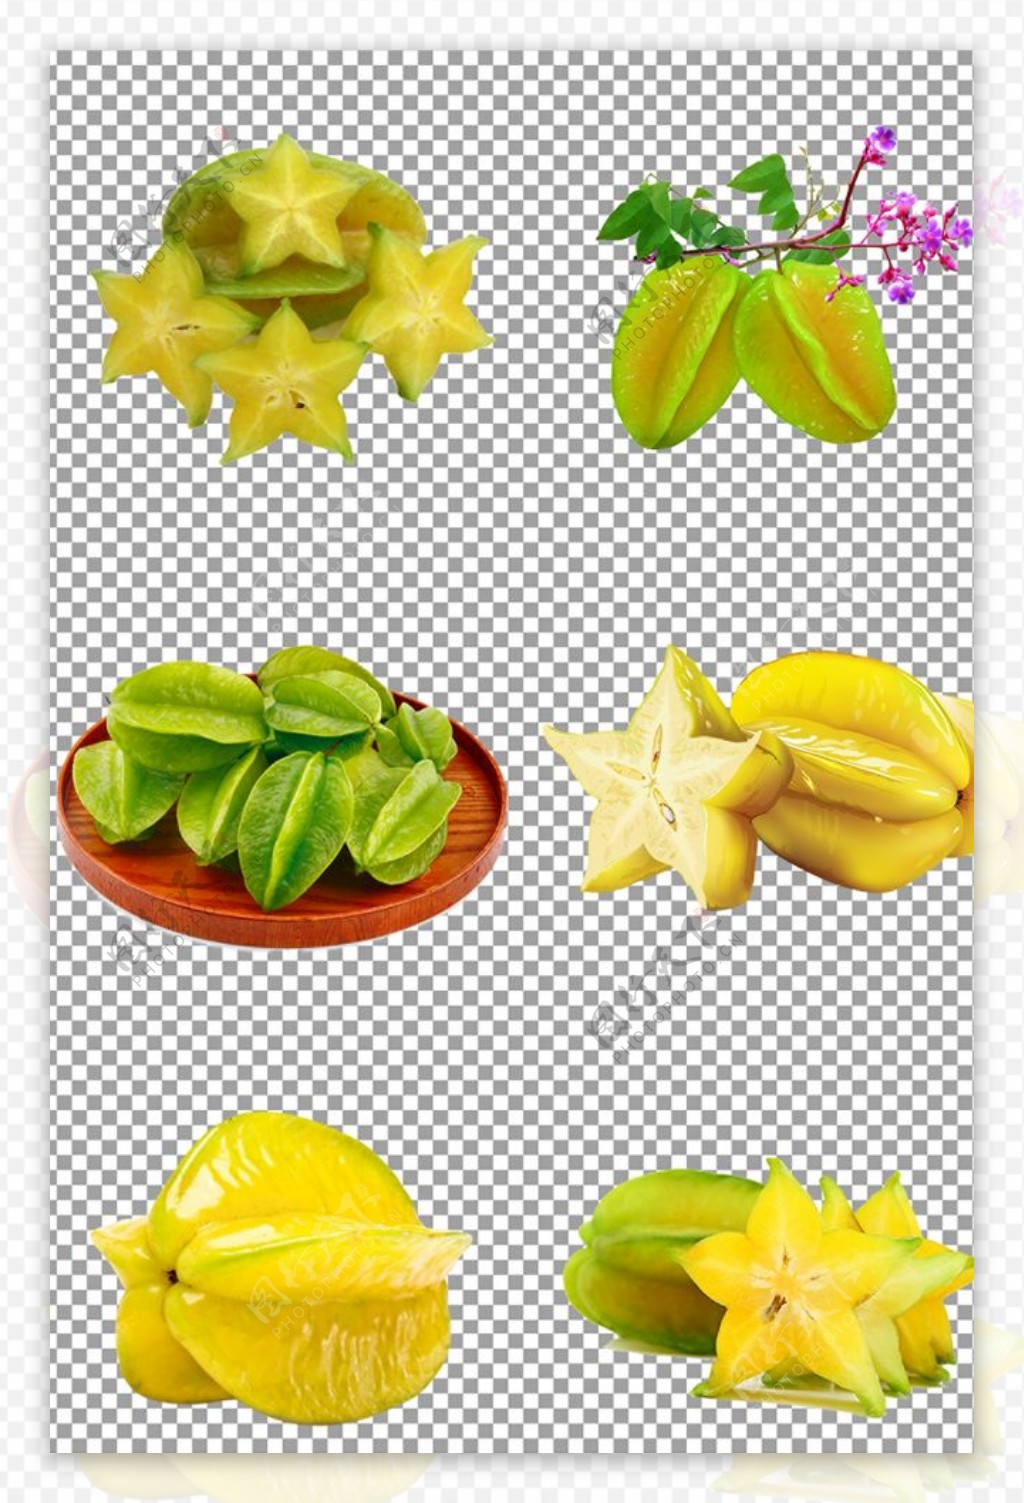 杨桃-名特食品图谱-图片